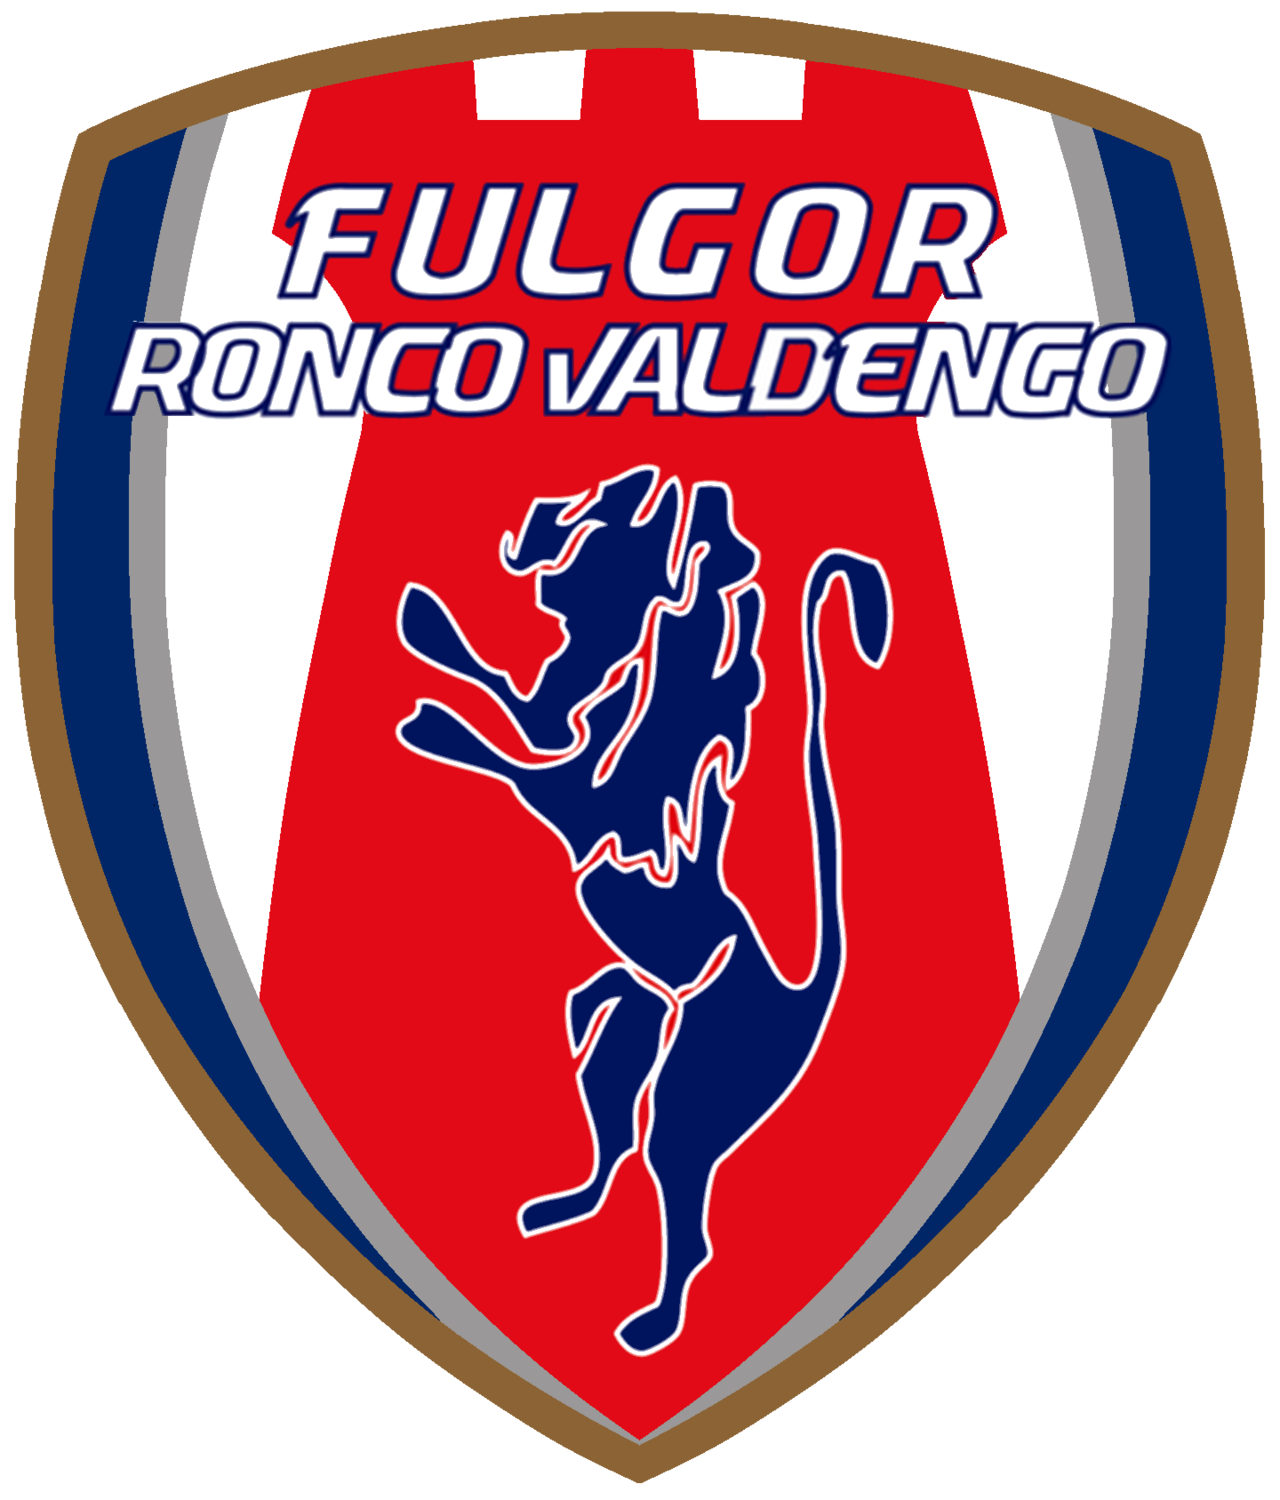 Wappen ASD Fulgor Ronco Valdengo diverse  82752